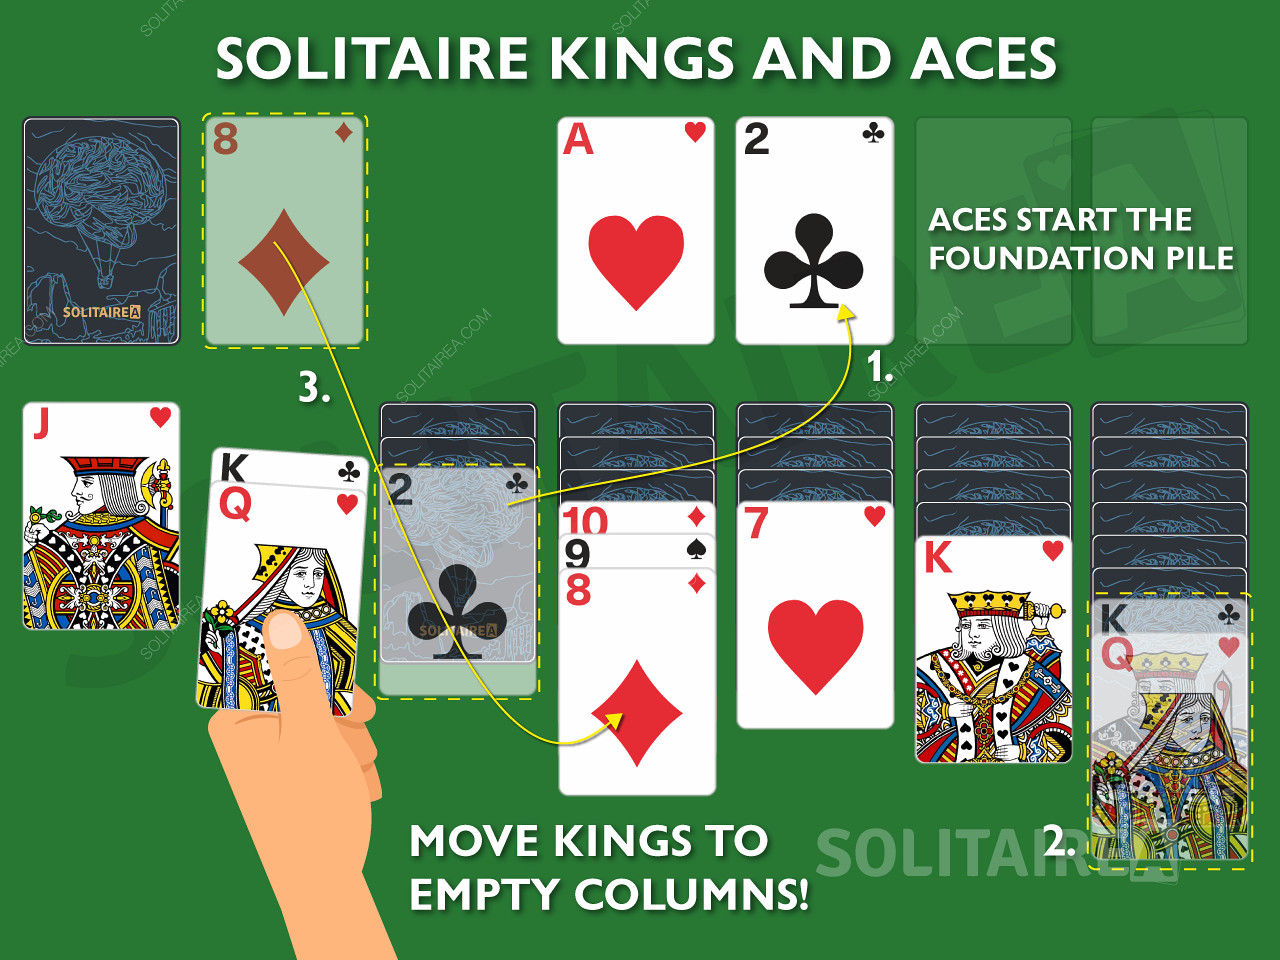 國王和王牌是紙牌遊戲中的重要牌，因為它們可以採取獨特的行動。